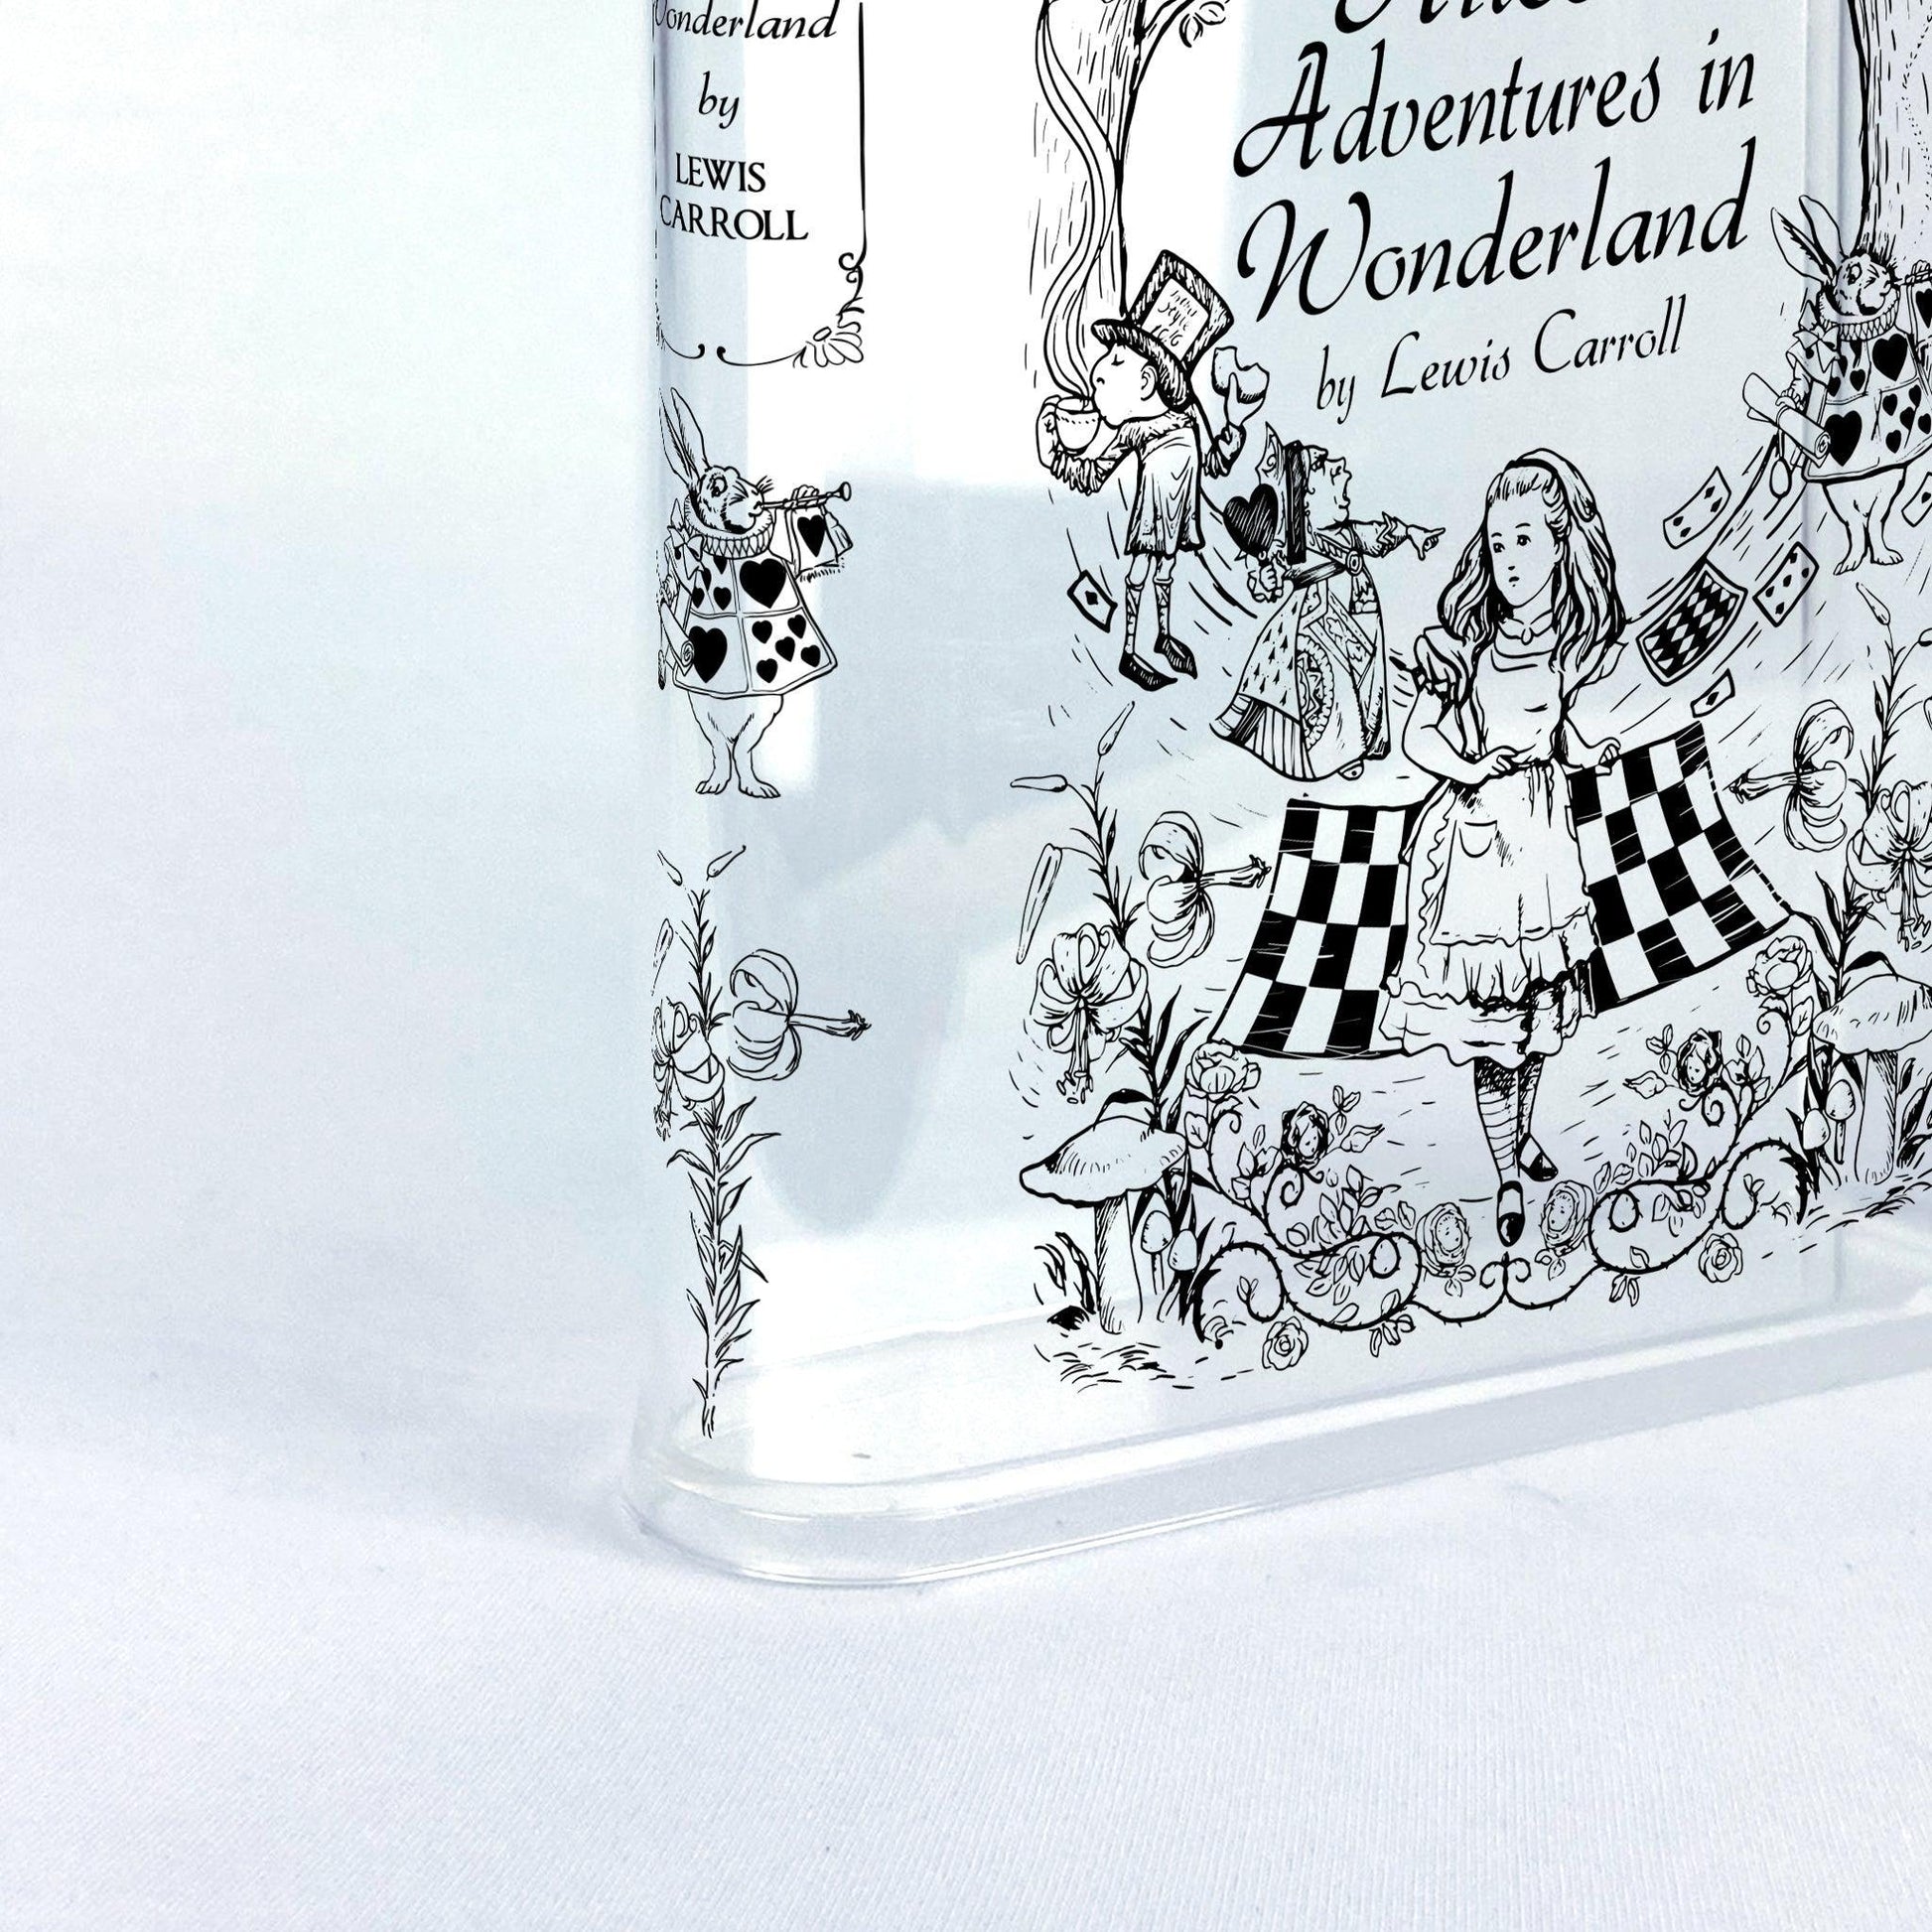 Alice's Adventures in Wonderland Acrylic Book Vase - II - Biblio Bloom